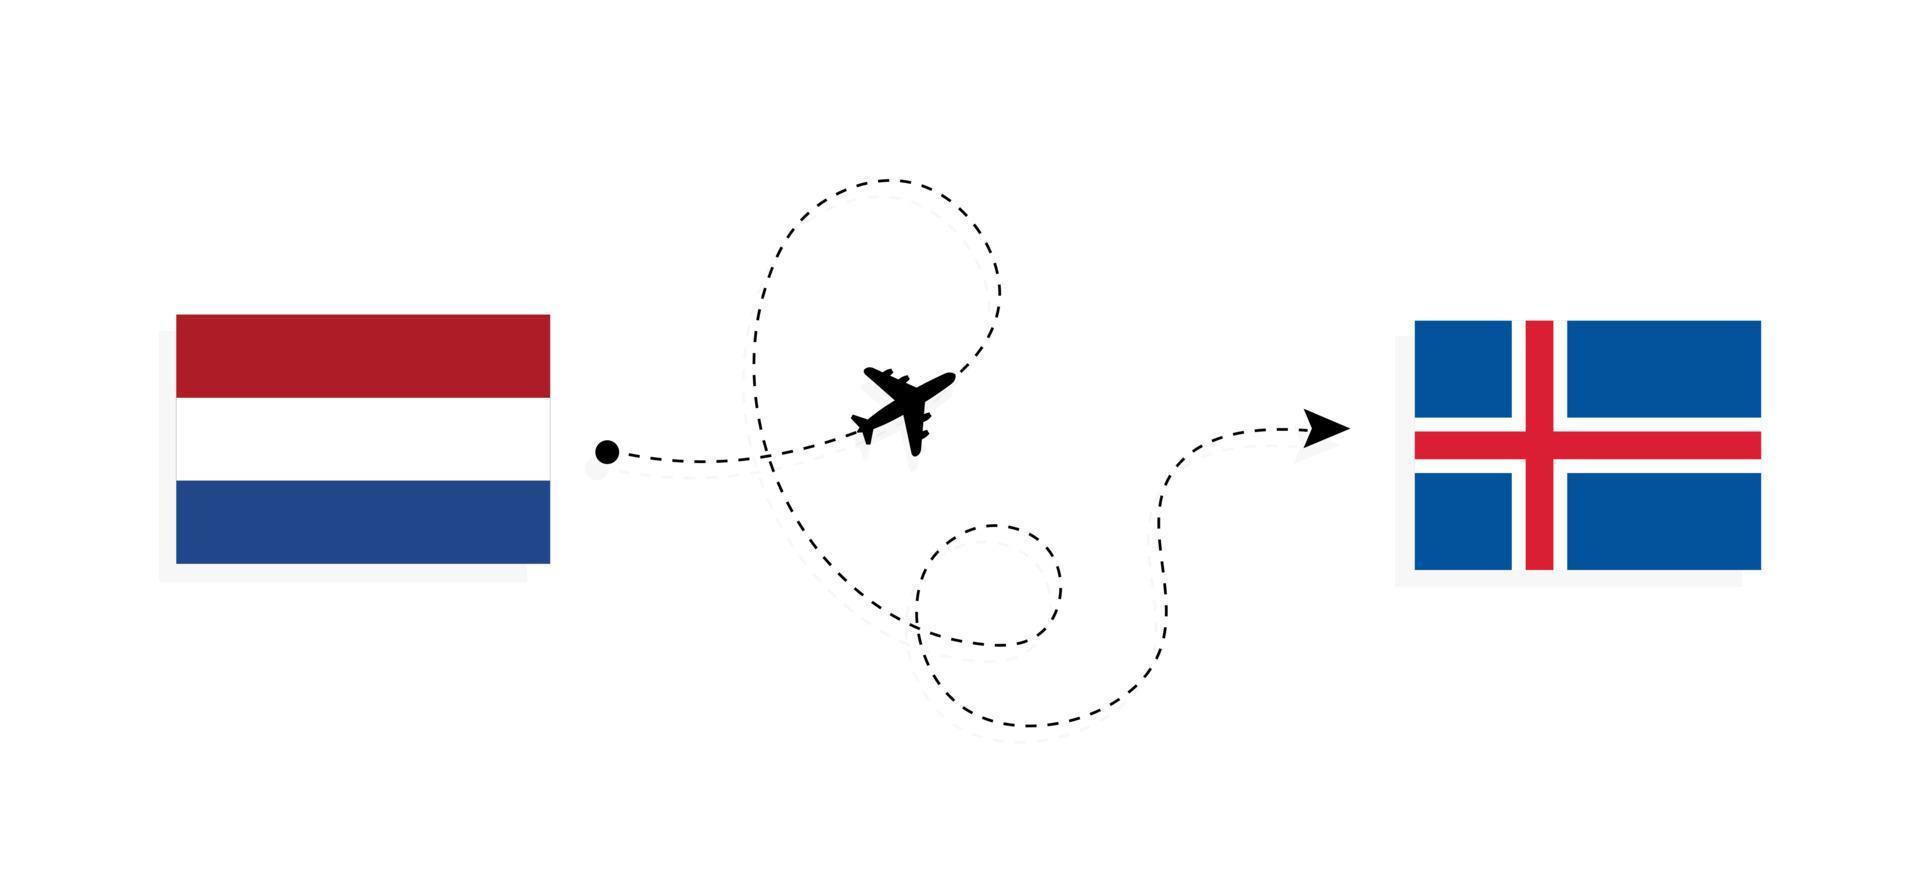 voo e viagem da Holanda para a Islândia pelo conceito de viagem de avião de passageiros vetor